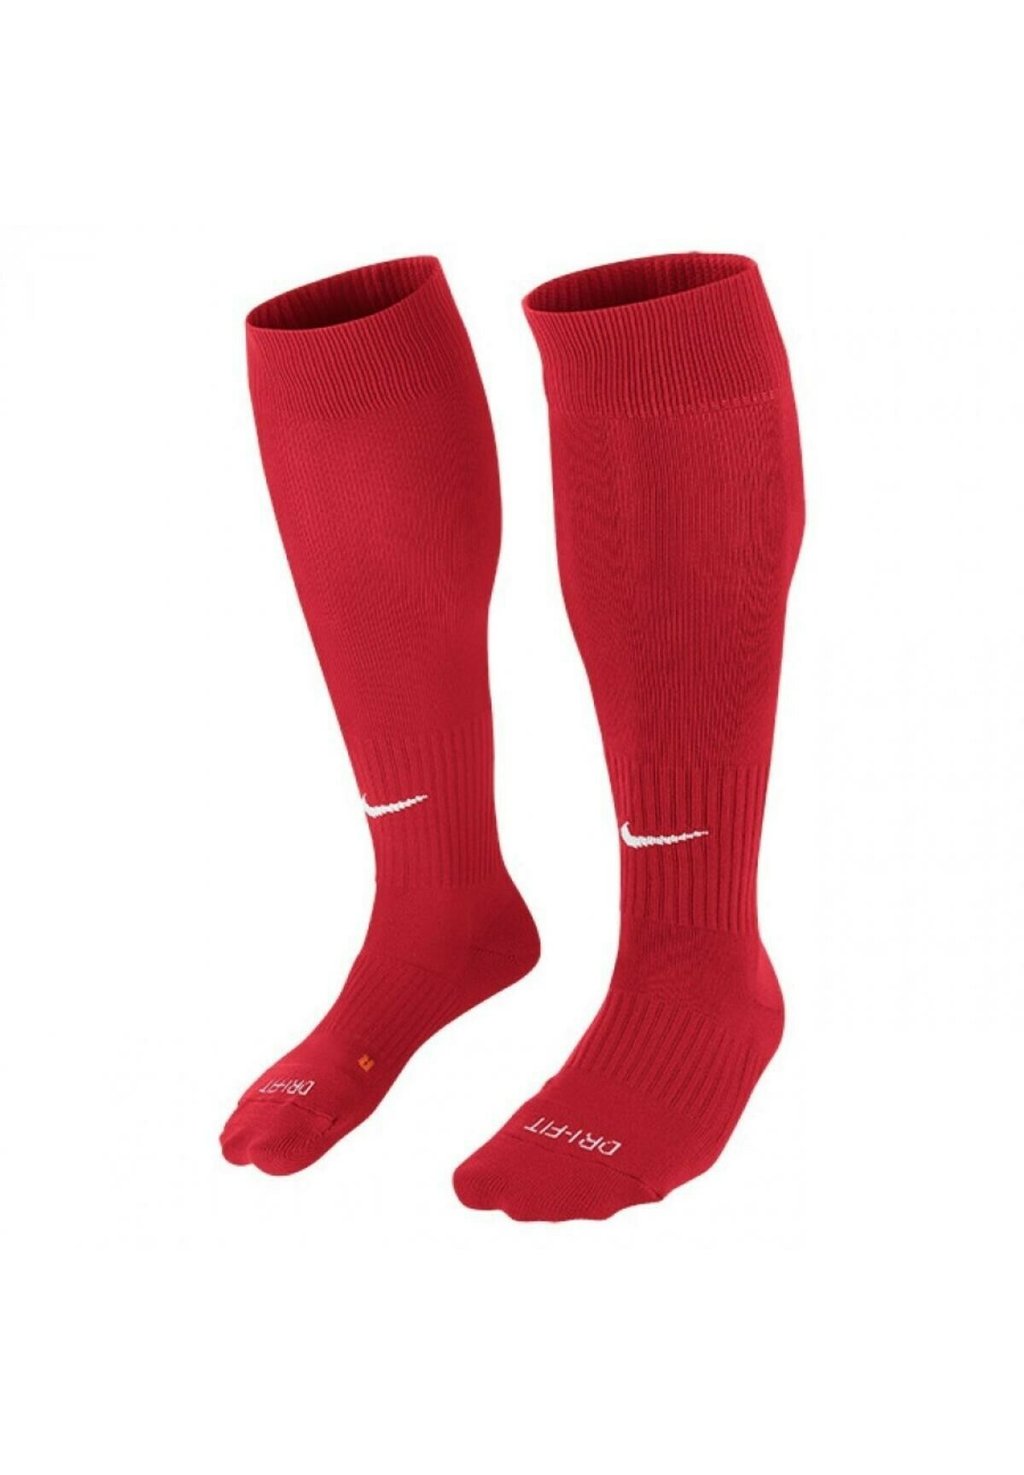 Спортивные носки Nike, красные